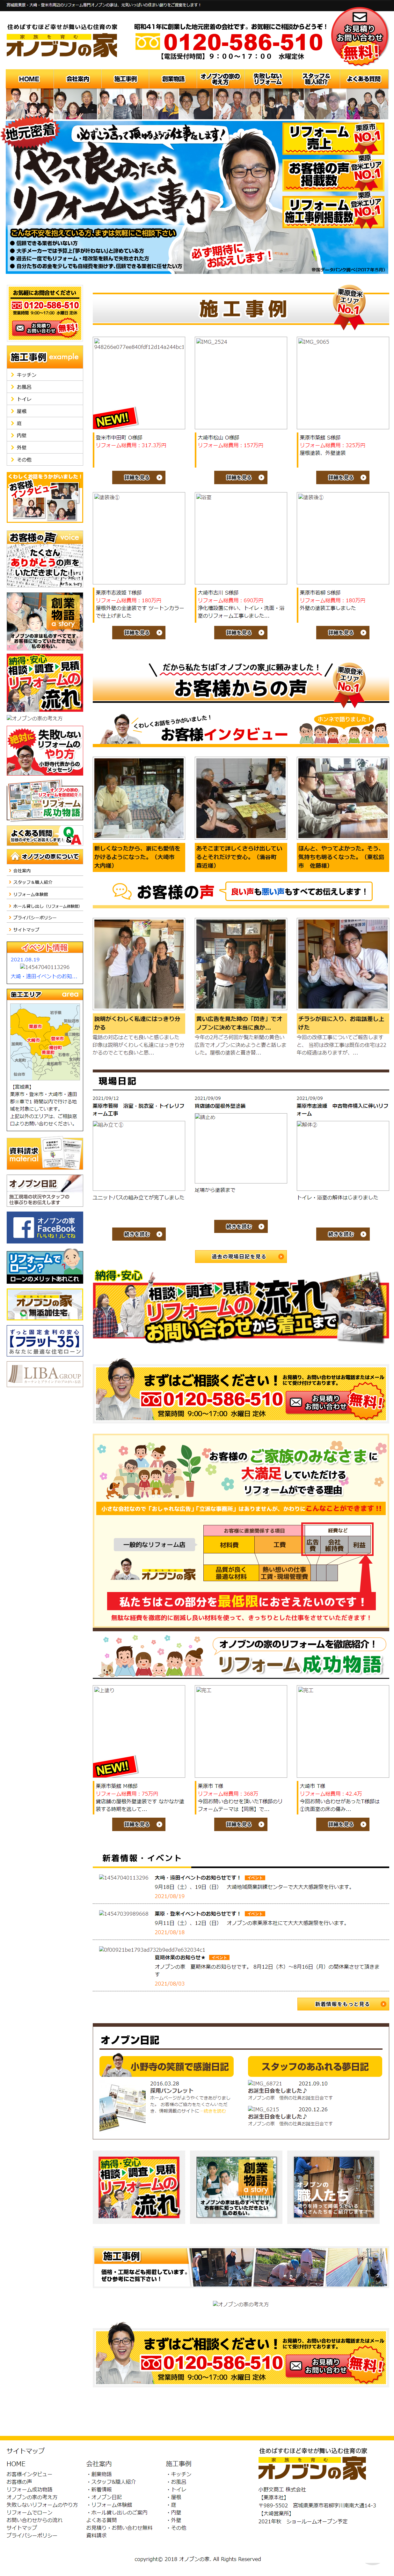 小野文商工株式会社／オノブンの家 様 施策前サイト